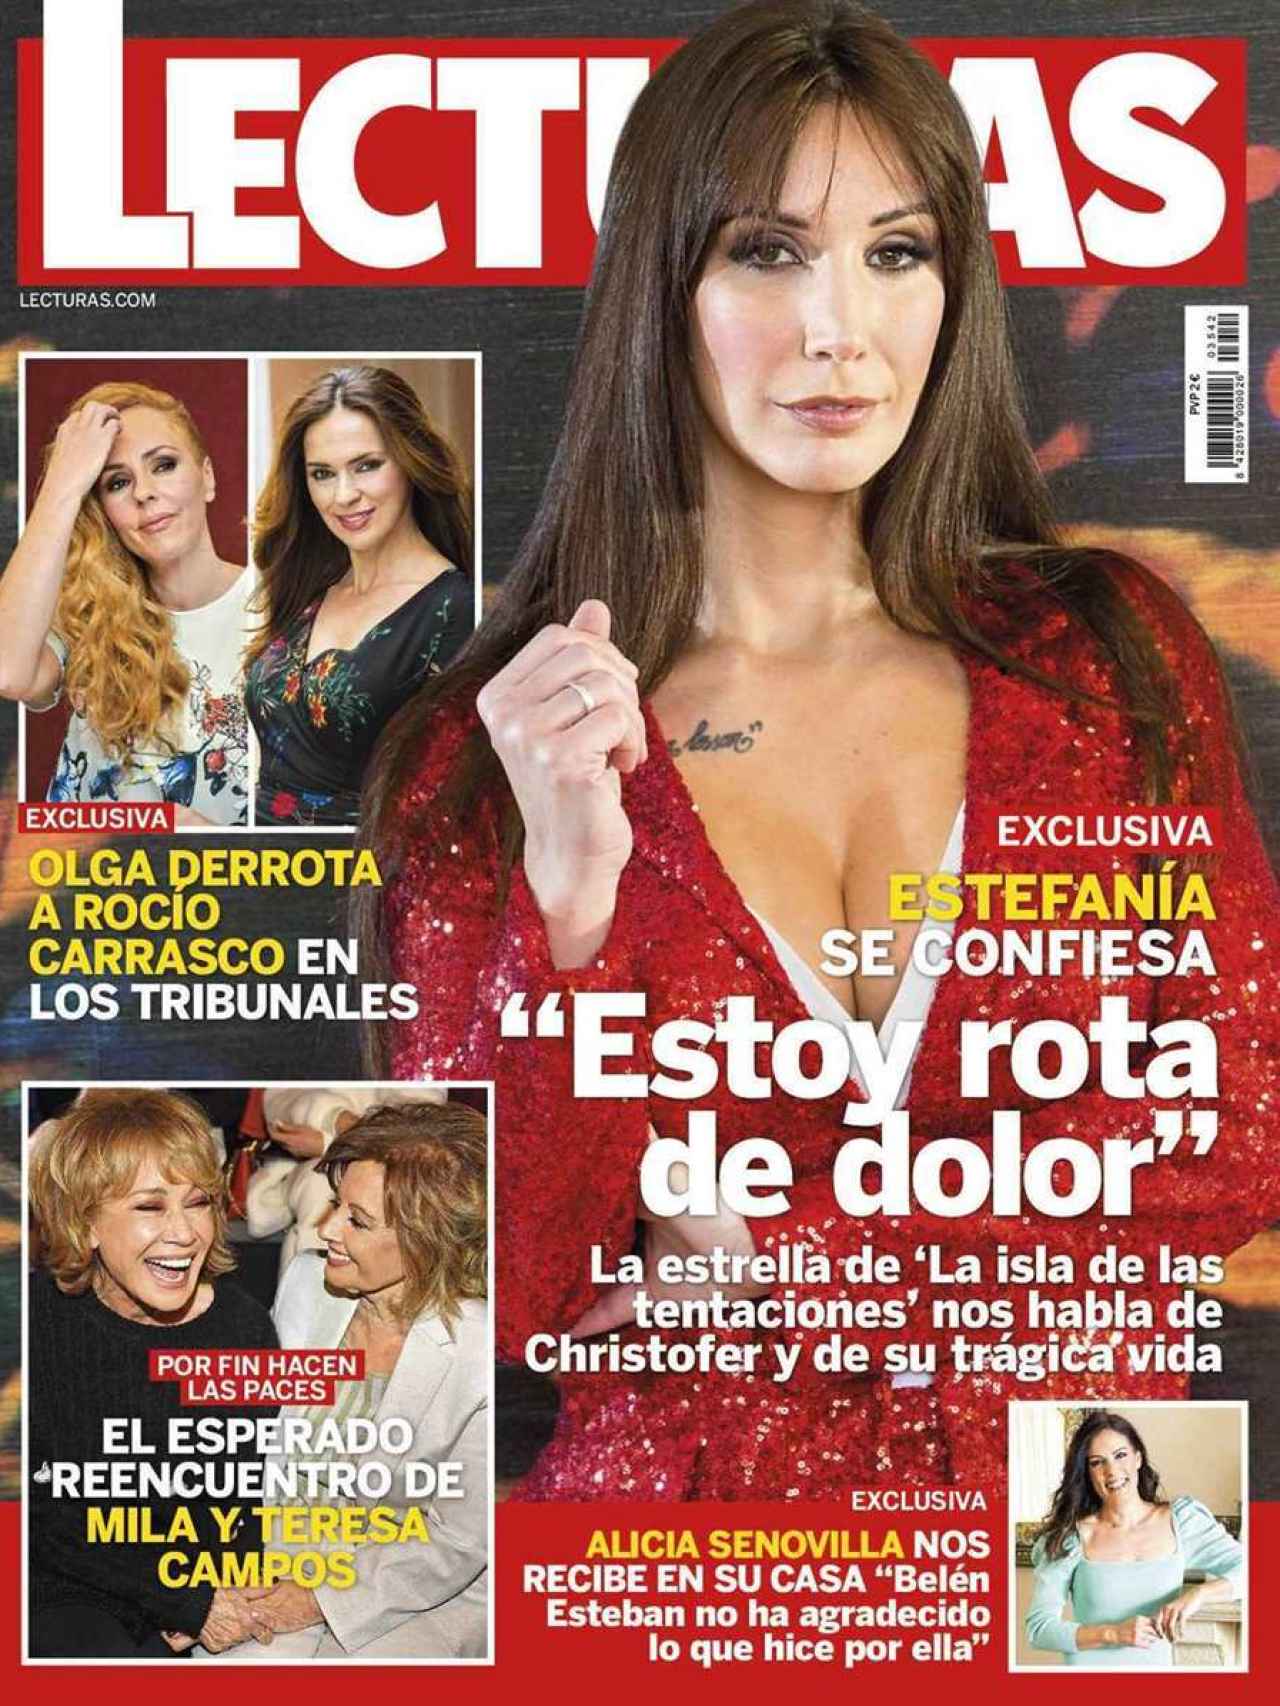 La portada de la revista Lecturas.